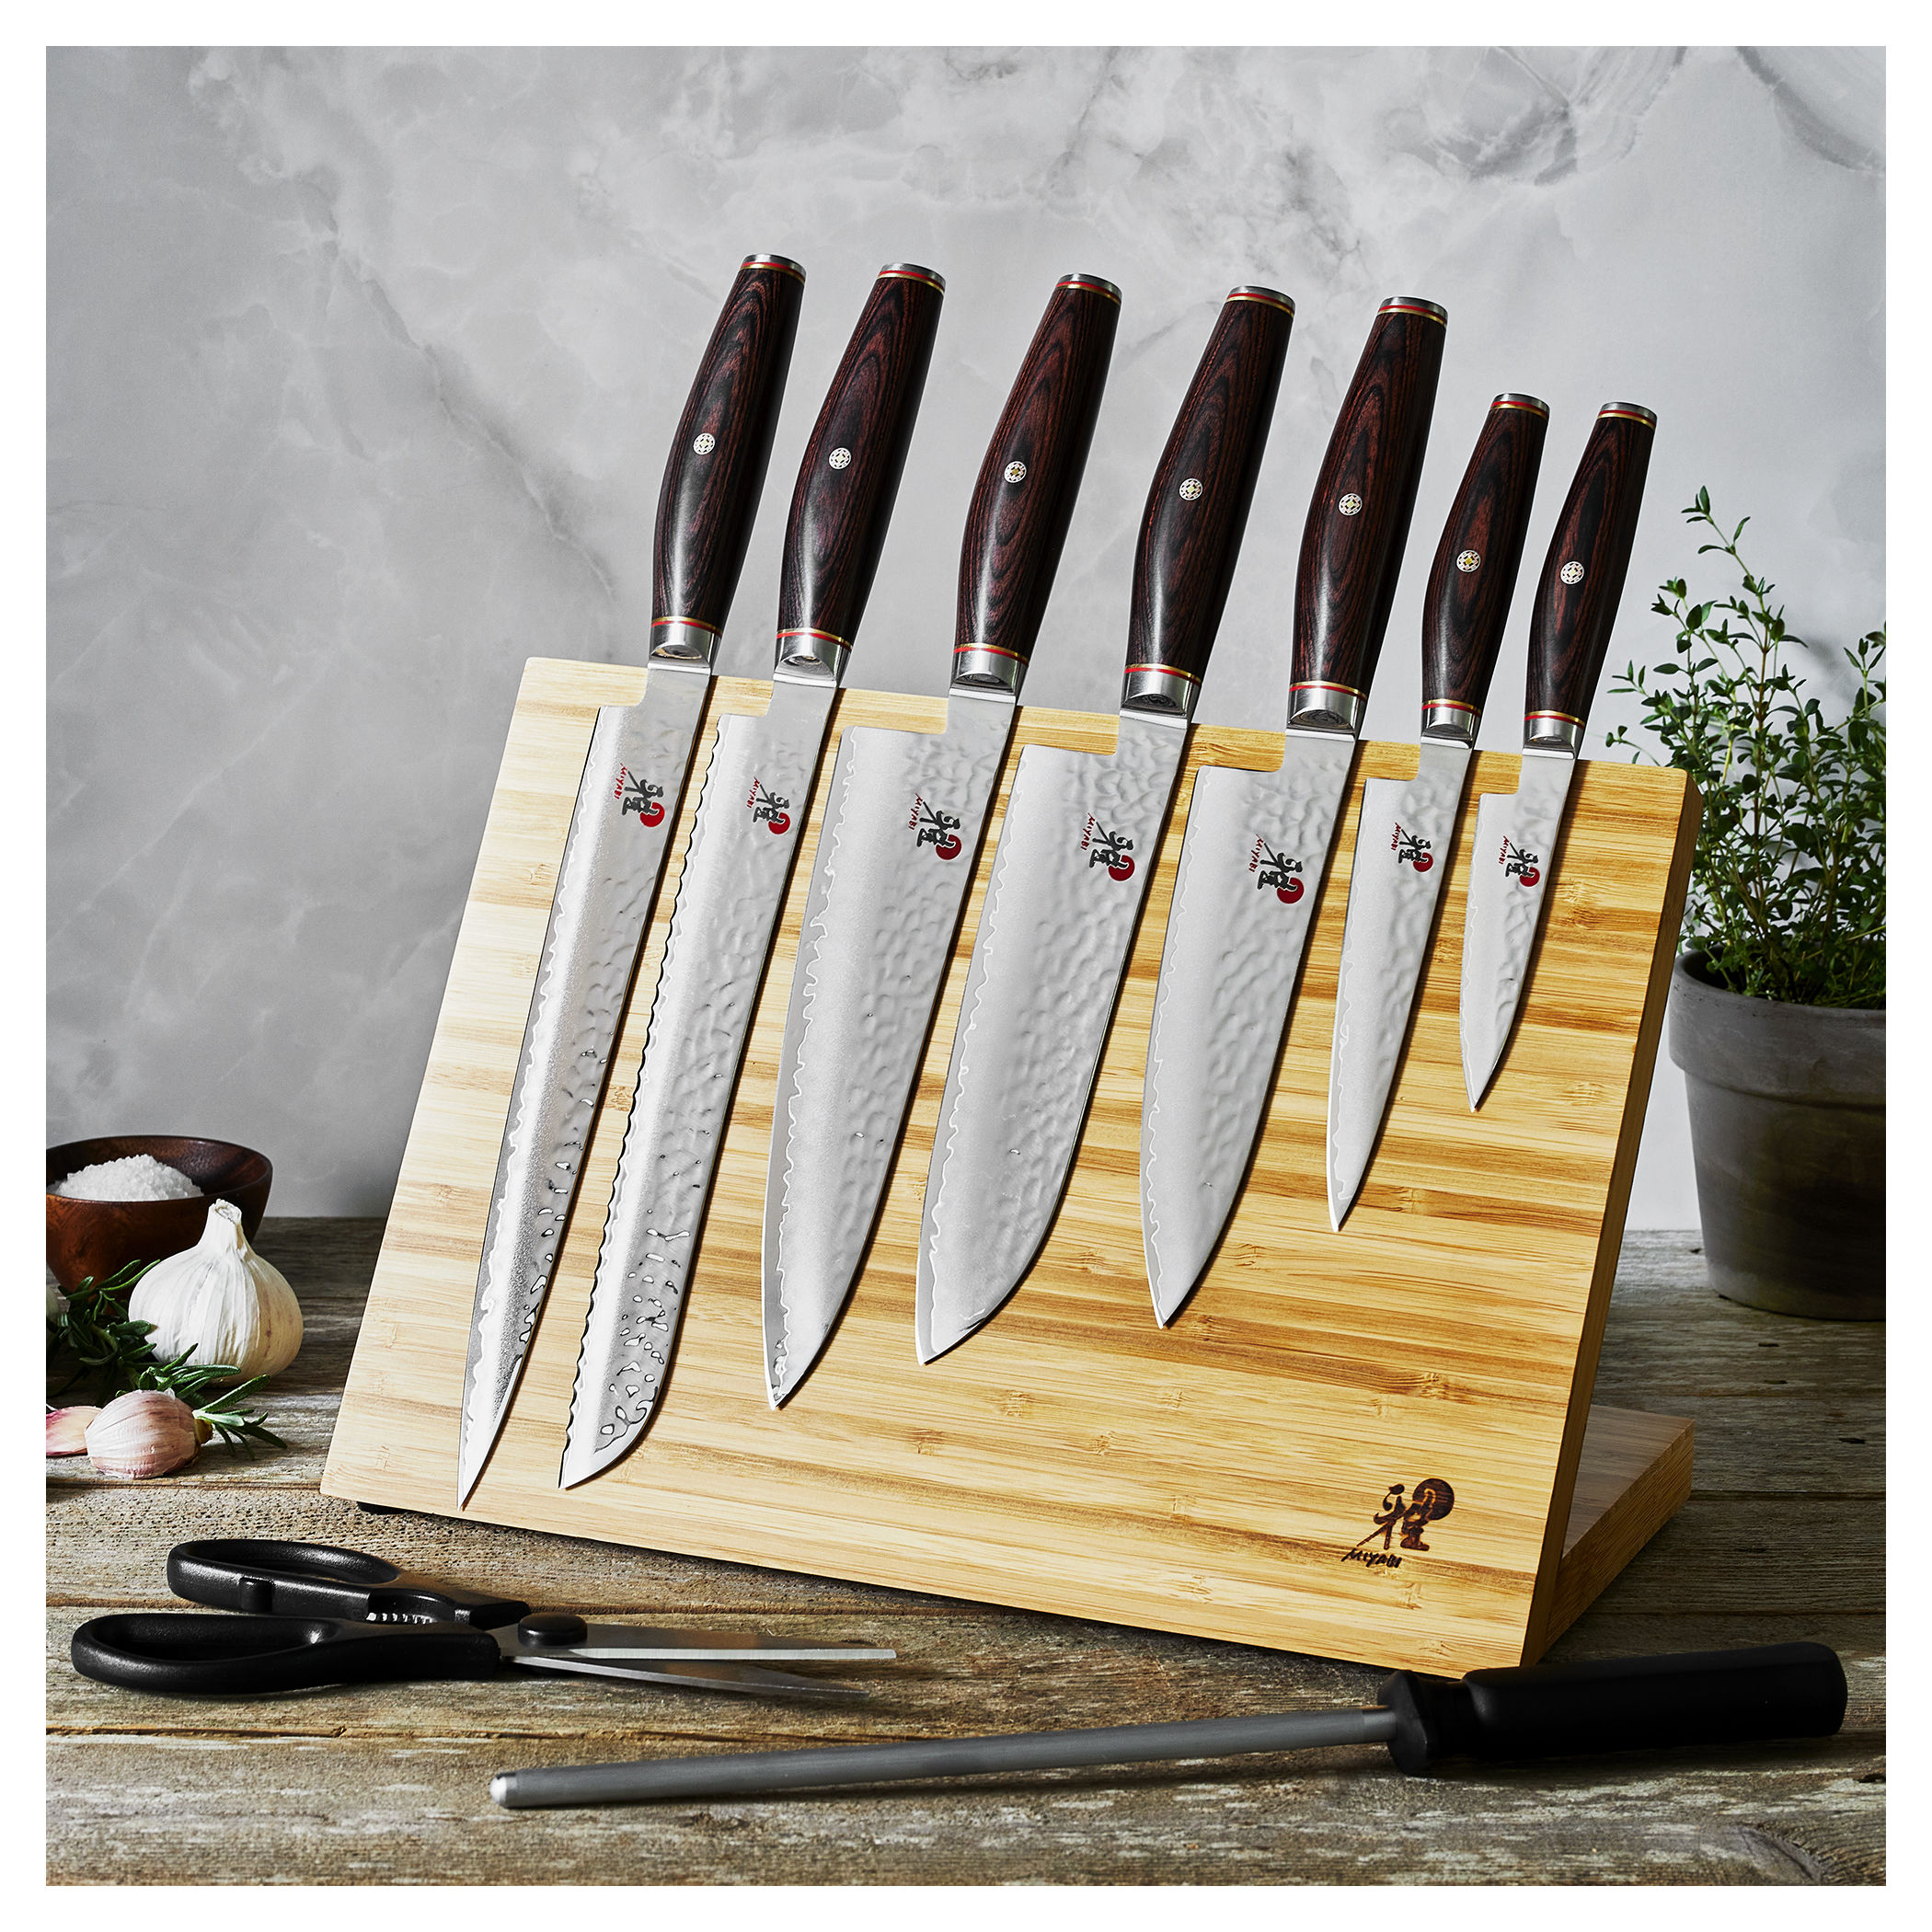 Buy MIYABI Artisan Knife block set